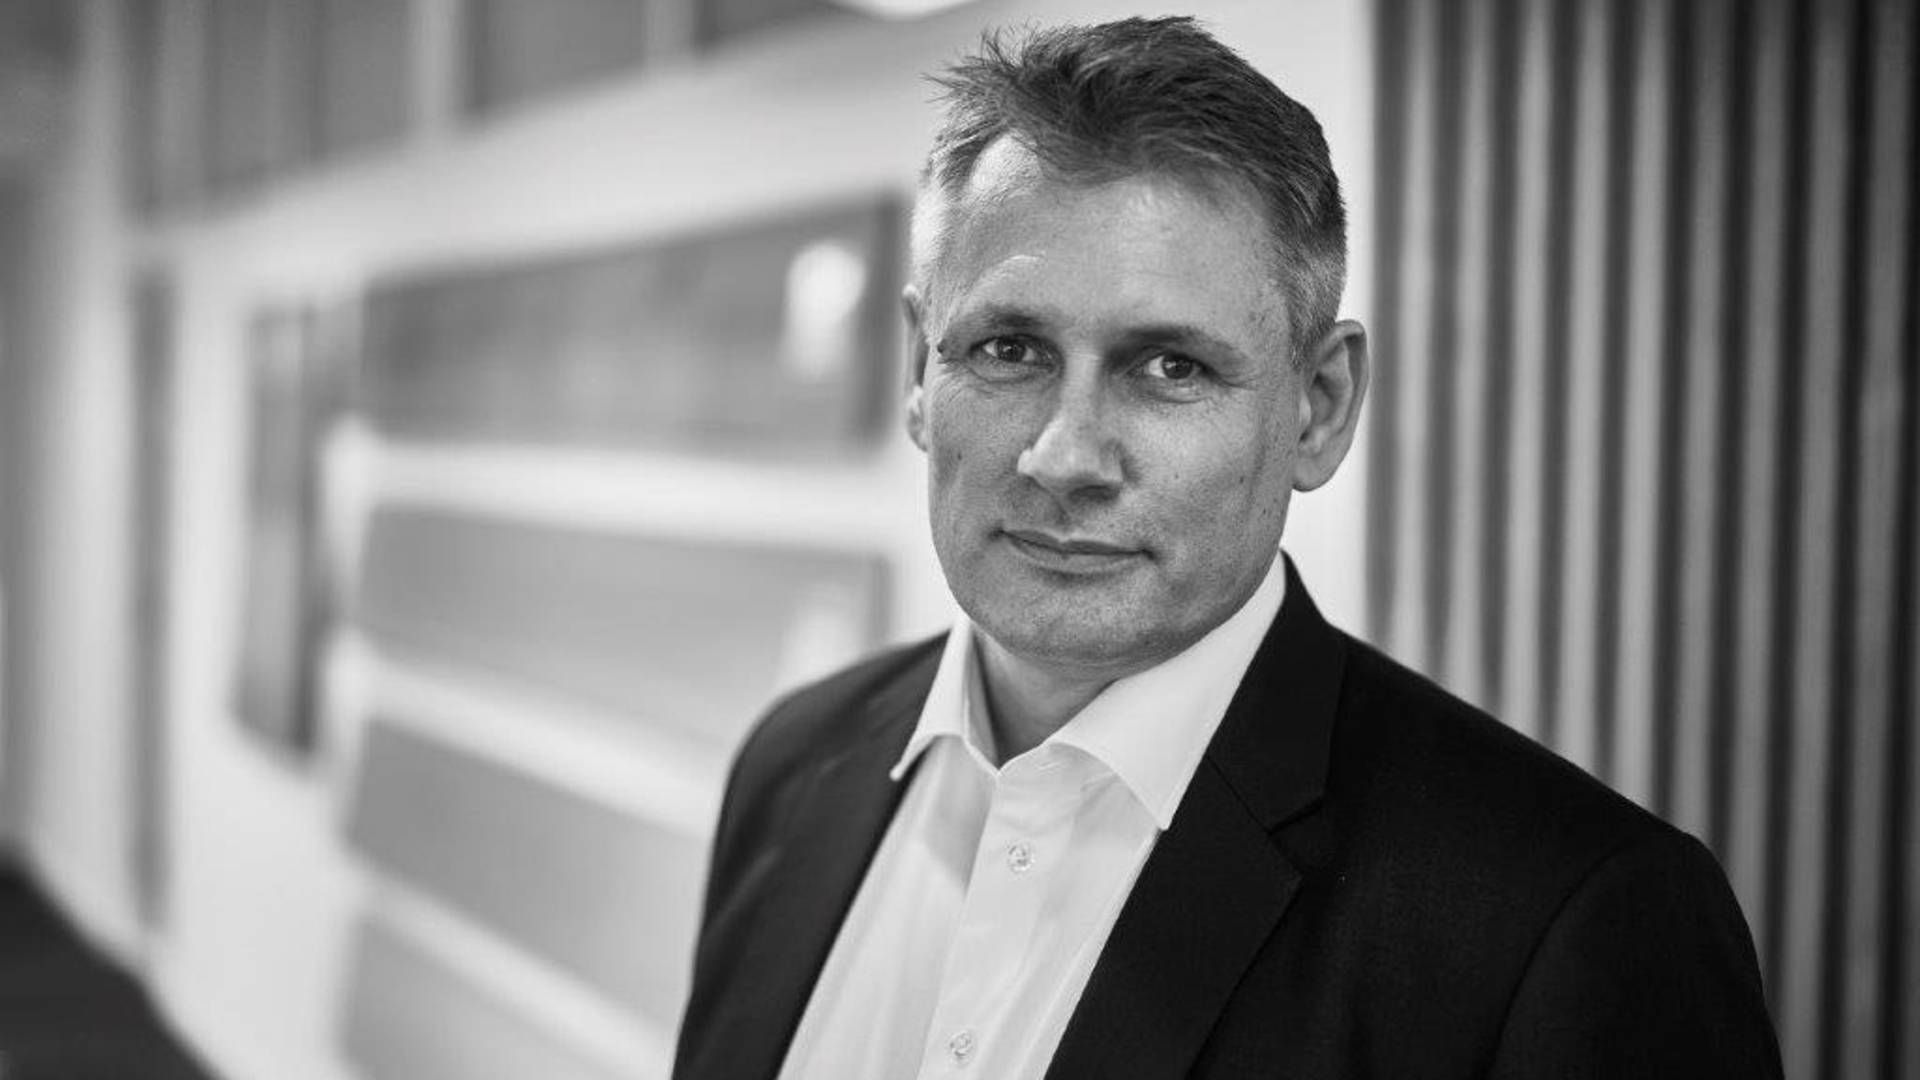 Adm. direktør for Inbogulve Peter Rønn blev headhuntet fra Kop & Kande i 2020 og lukker bogen til rekordomsætning i første fulde årsregnskab. | Foto: PR/Inbogulve amba